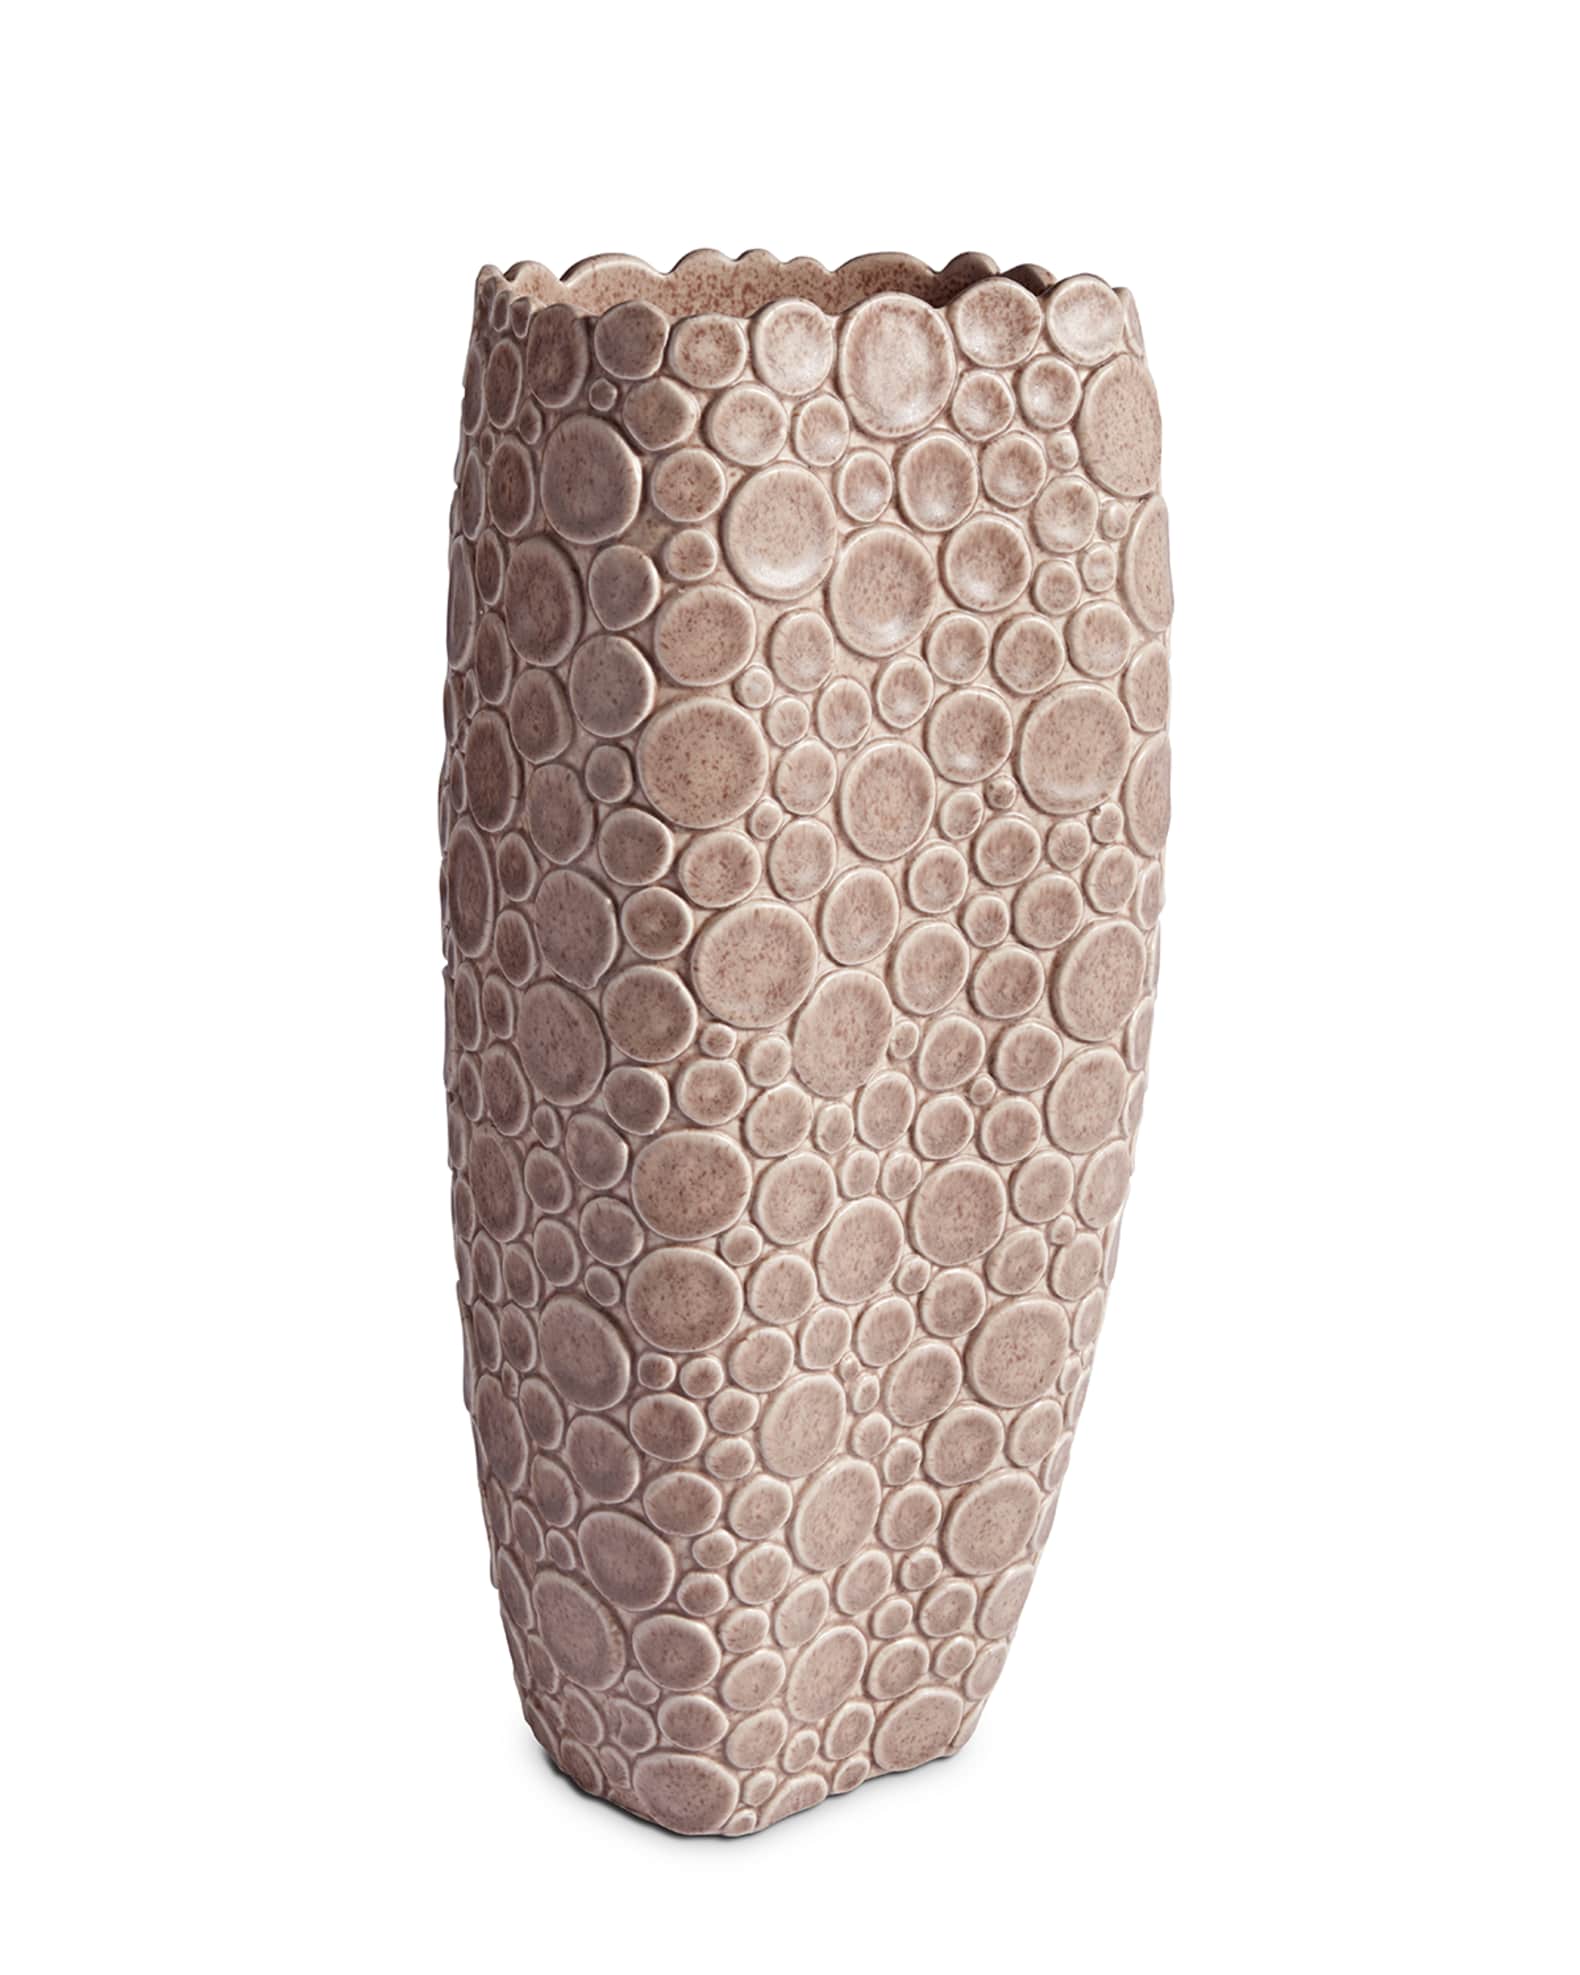 L'Objet - Damier Vase - Large